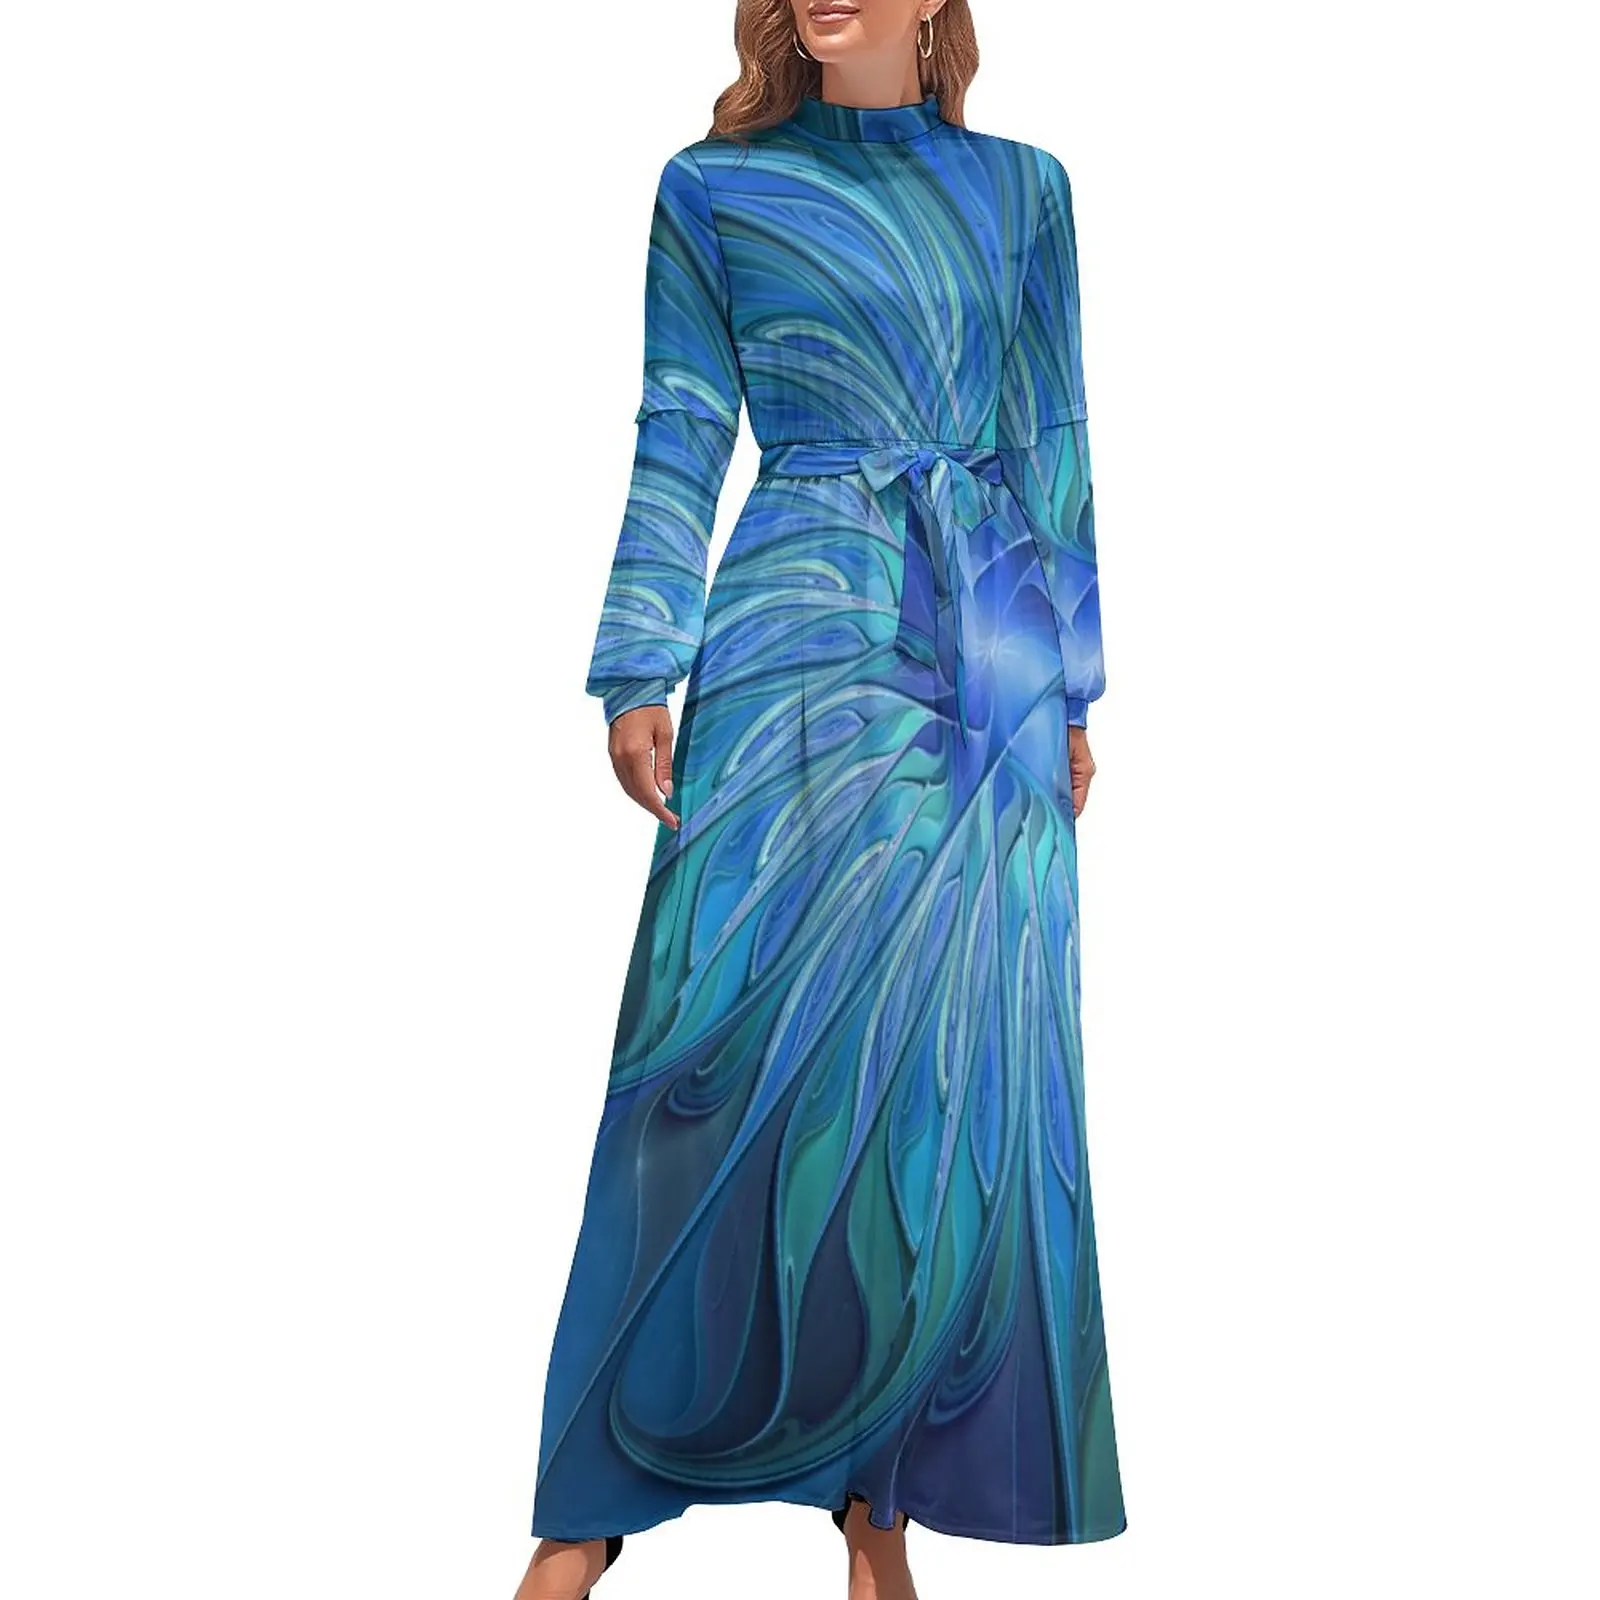 

Платье макси с цветочным принтом, длинное платье с высокой талией, с абстрактным фрактальным рисунком, в богемном стиле, с длинным рукавом, синее